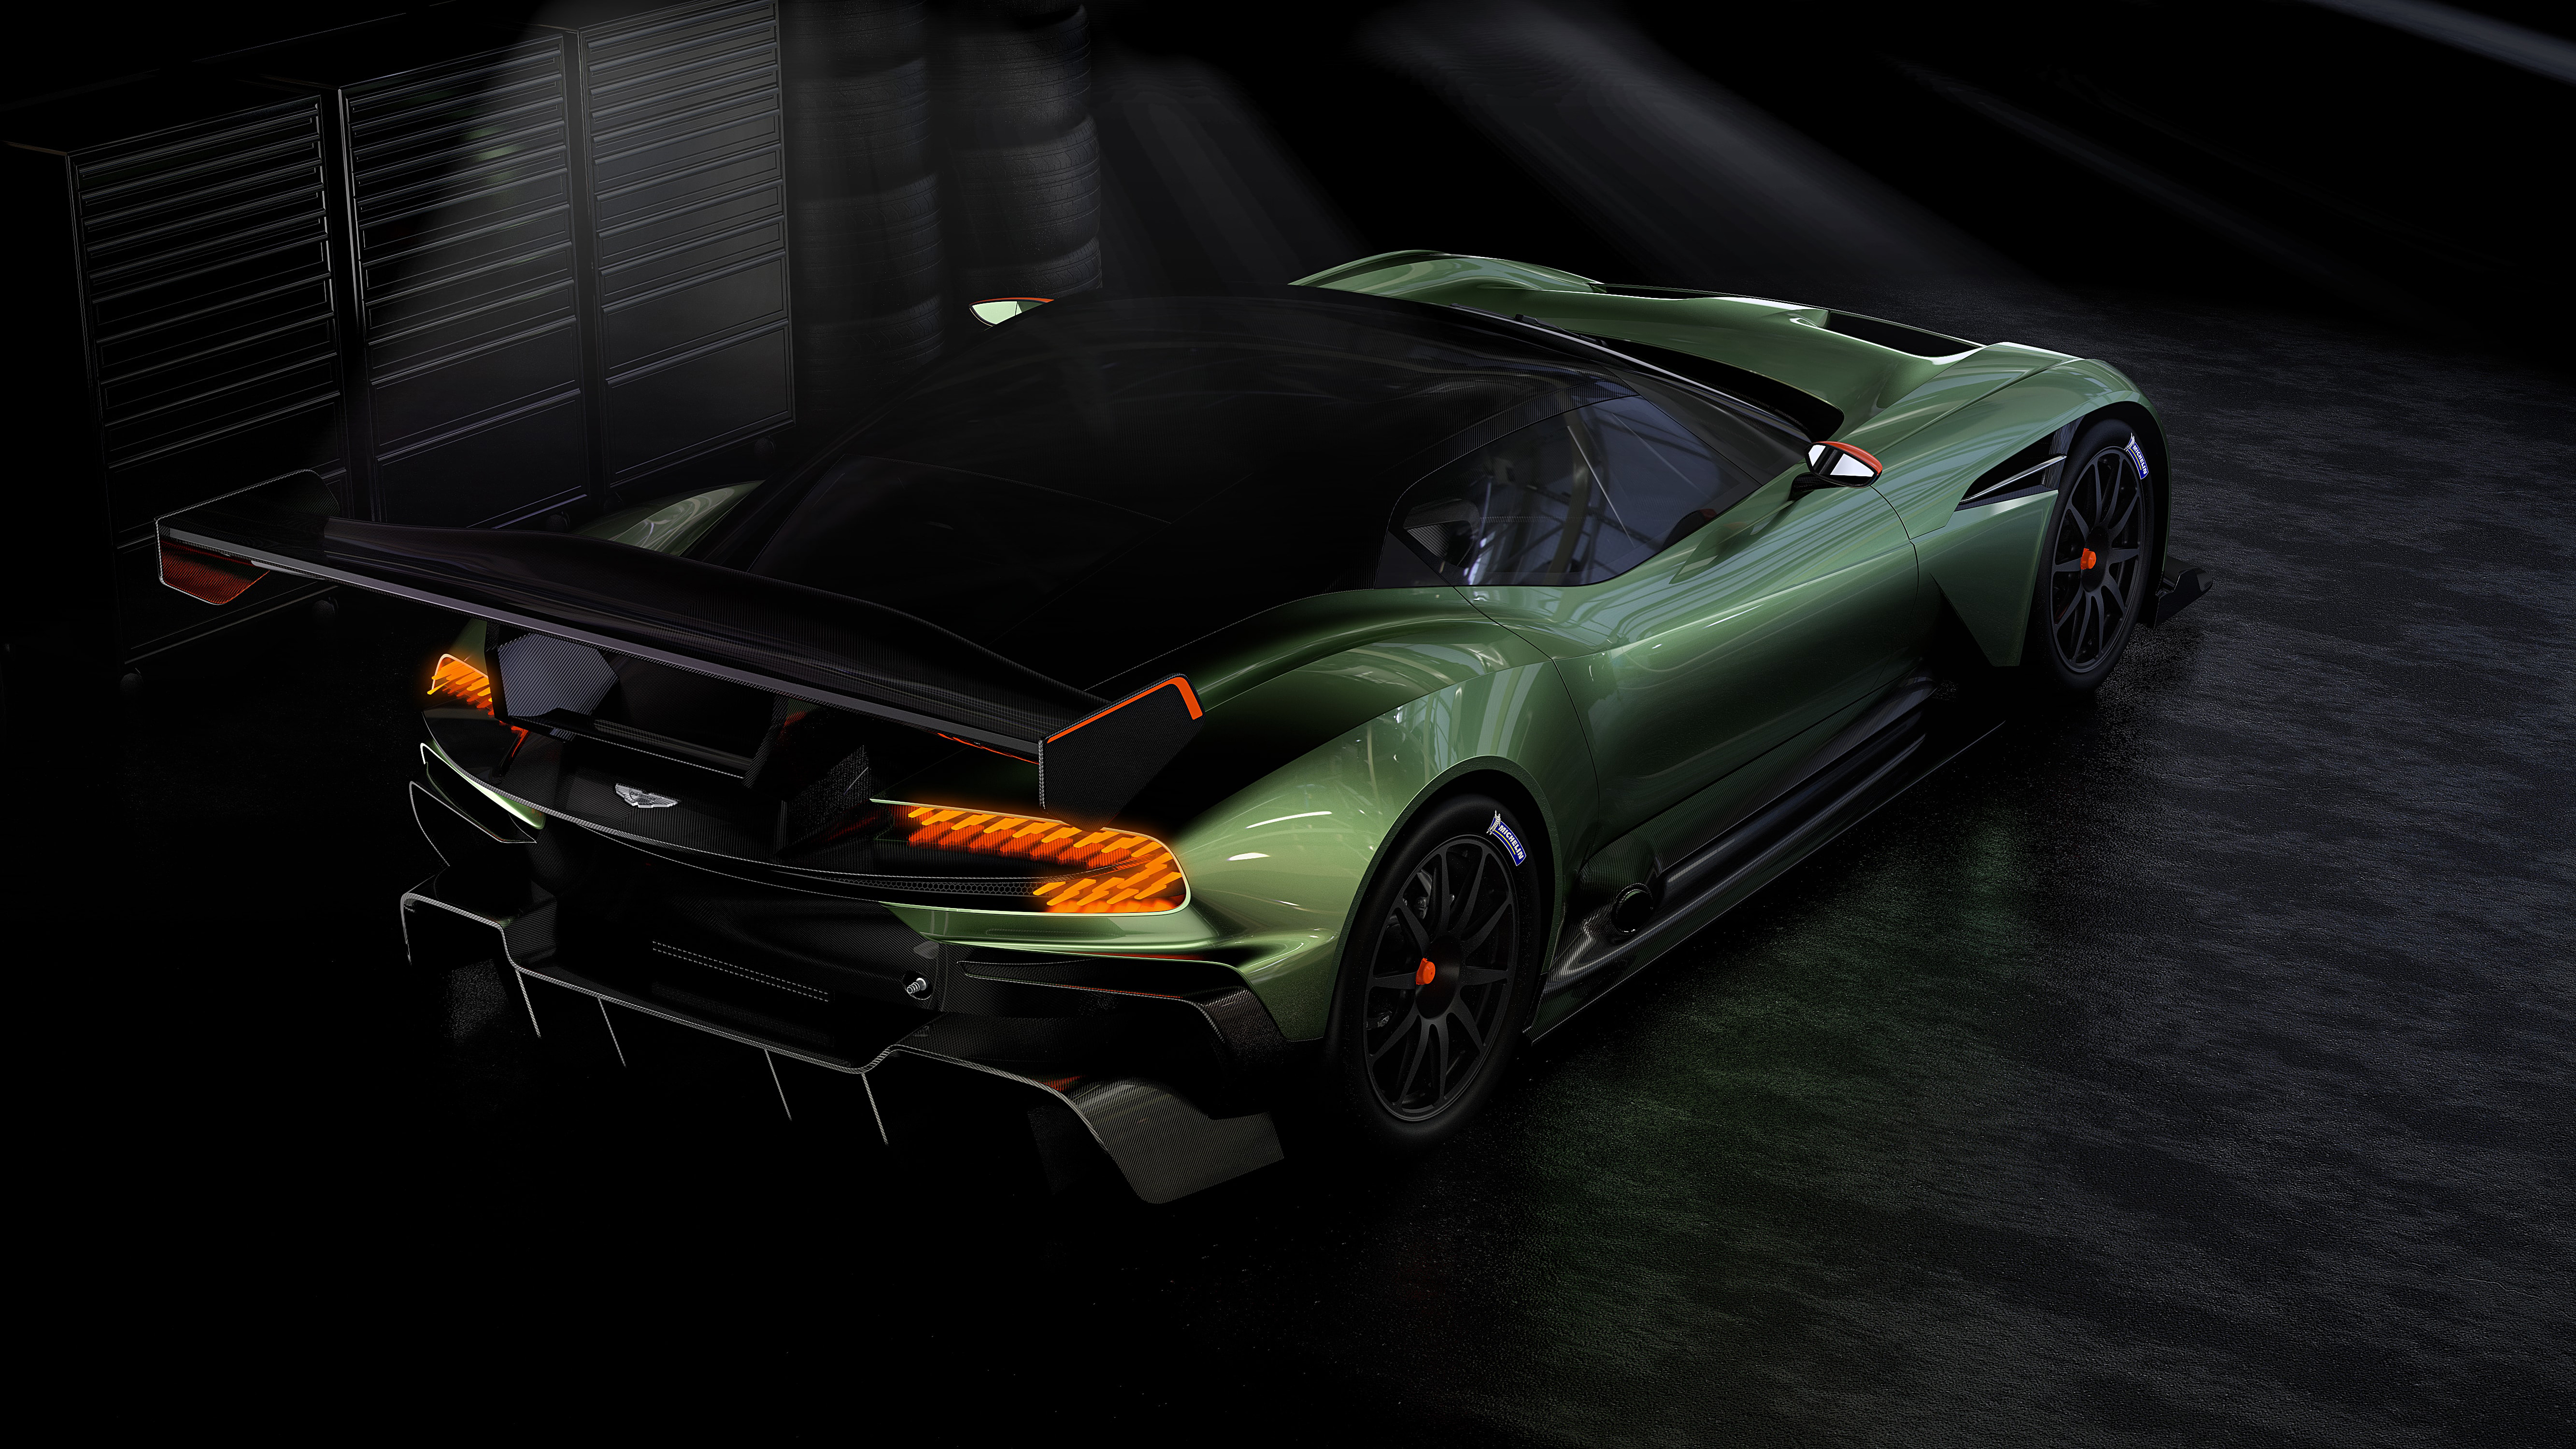 Download mobile wallpaper Aston Martin, Hypercar, Race Car, Vehicles, Green Car, Aston Martin Vulcan for free.